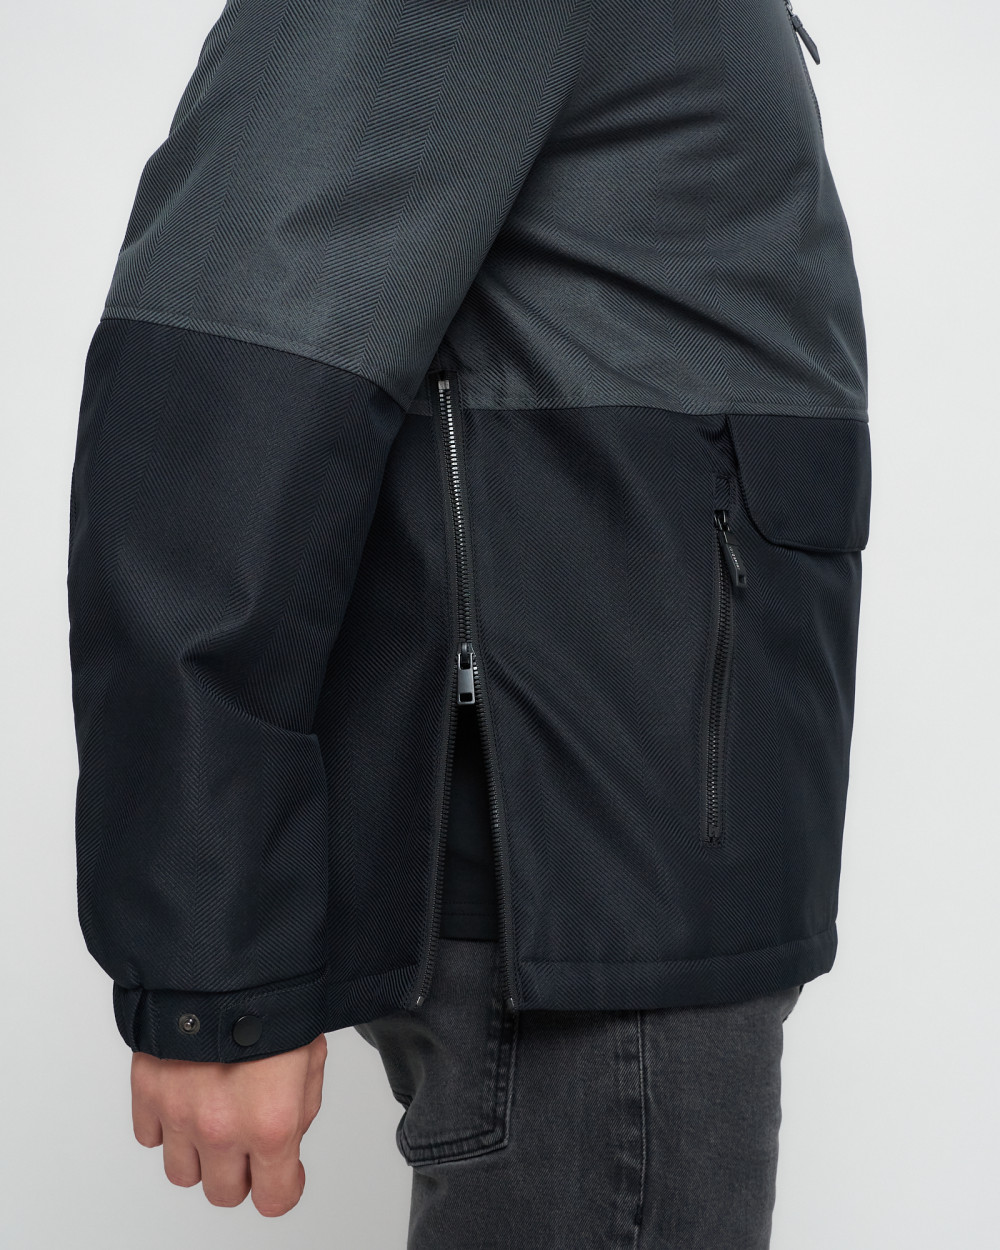 Купить куртку анорак спортивную мужскую оптом от производителя недорого в Москве 3307TC 1